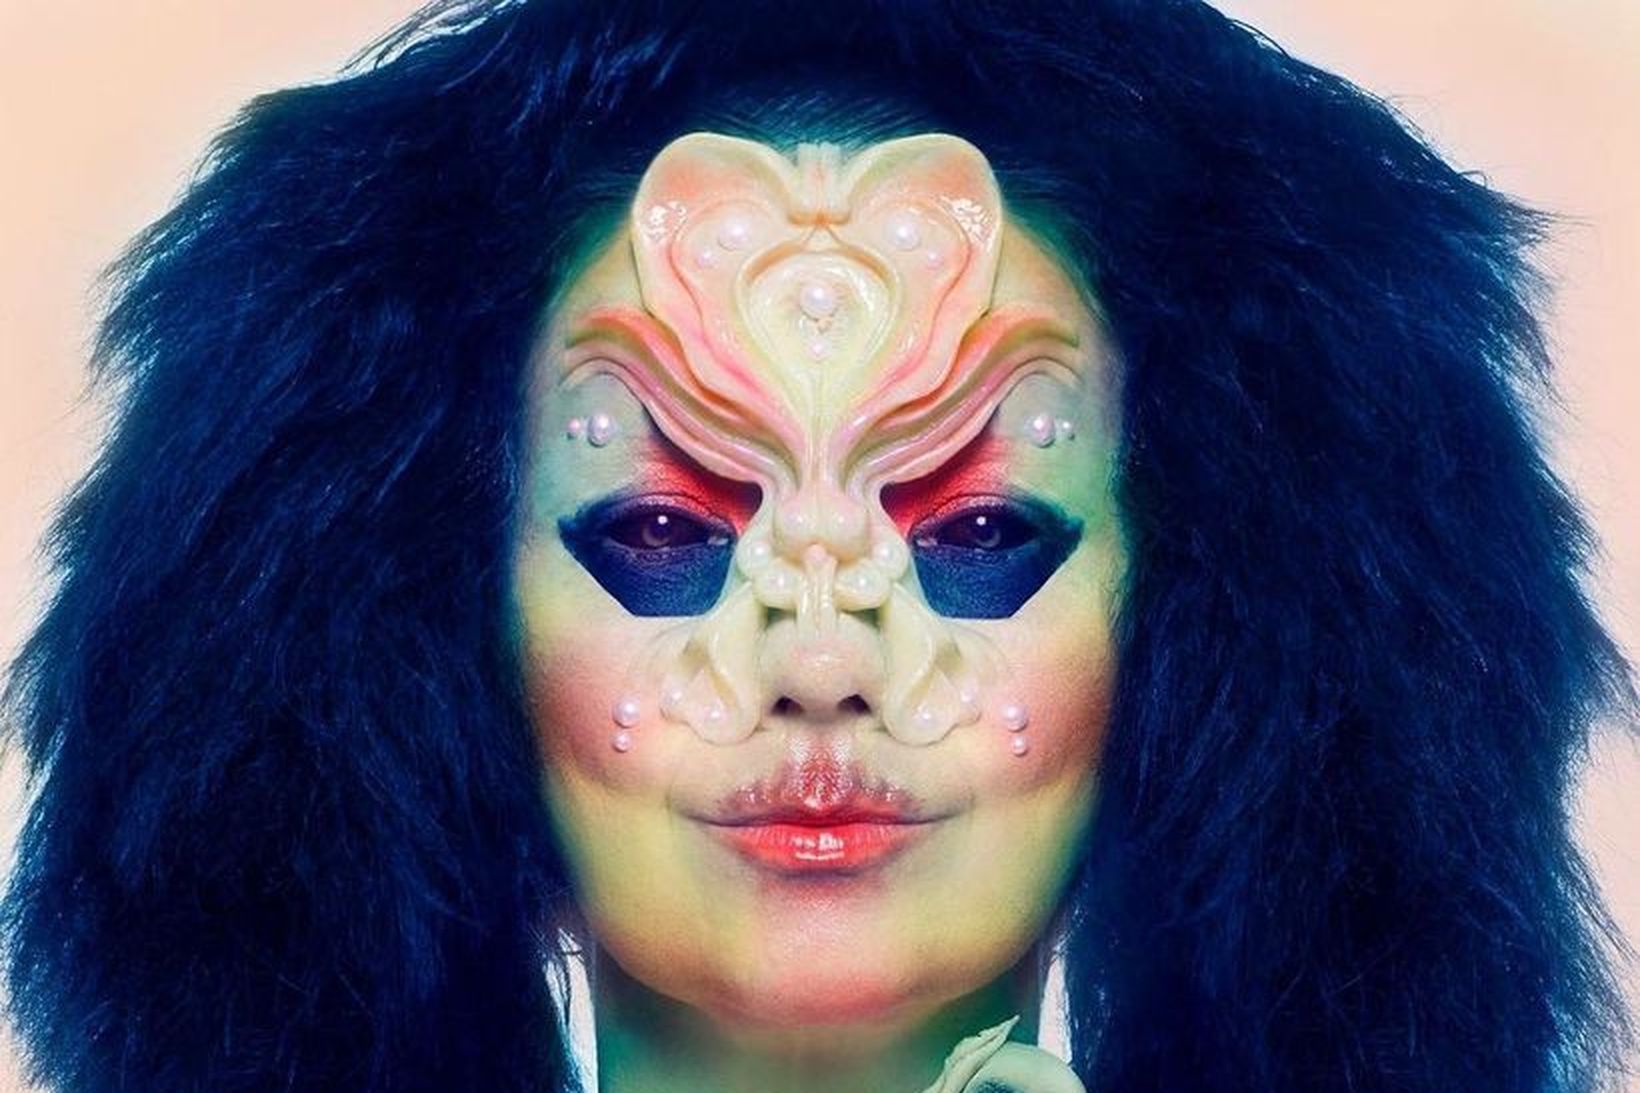 Björk ber grímu úr sílikonu á plötuumslagi nýjustu plötu sinnar, …